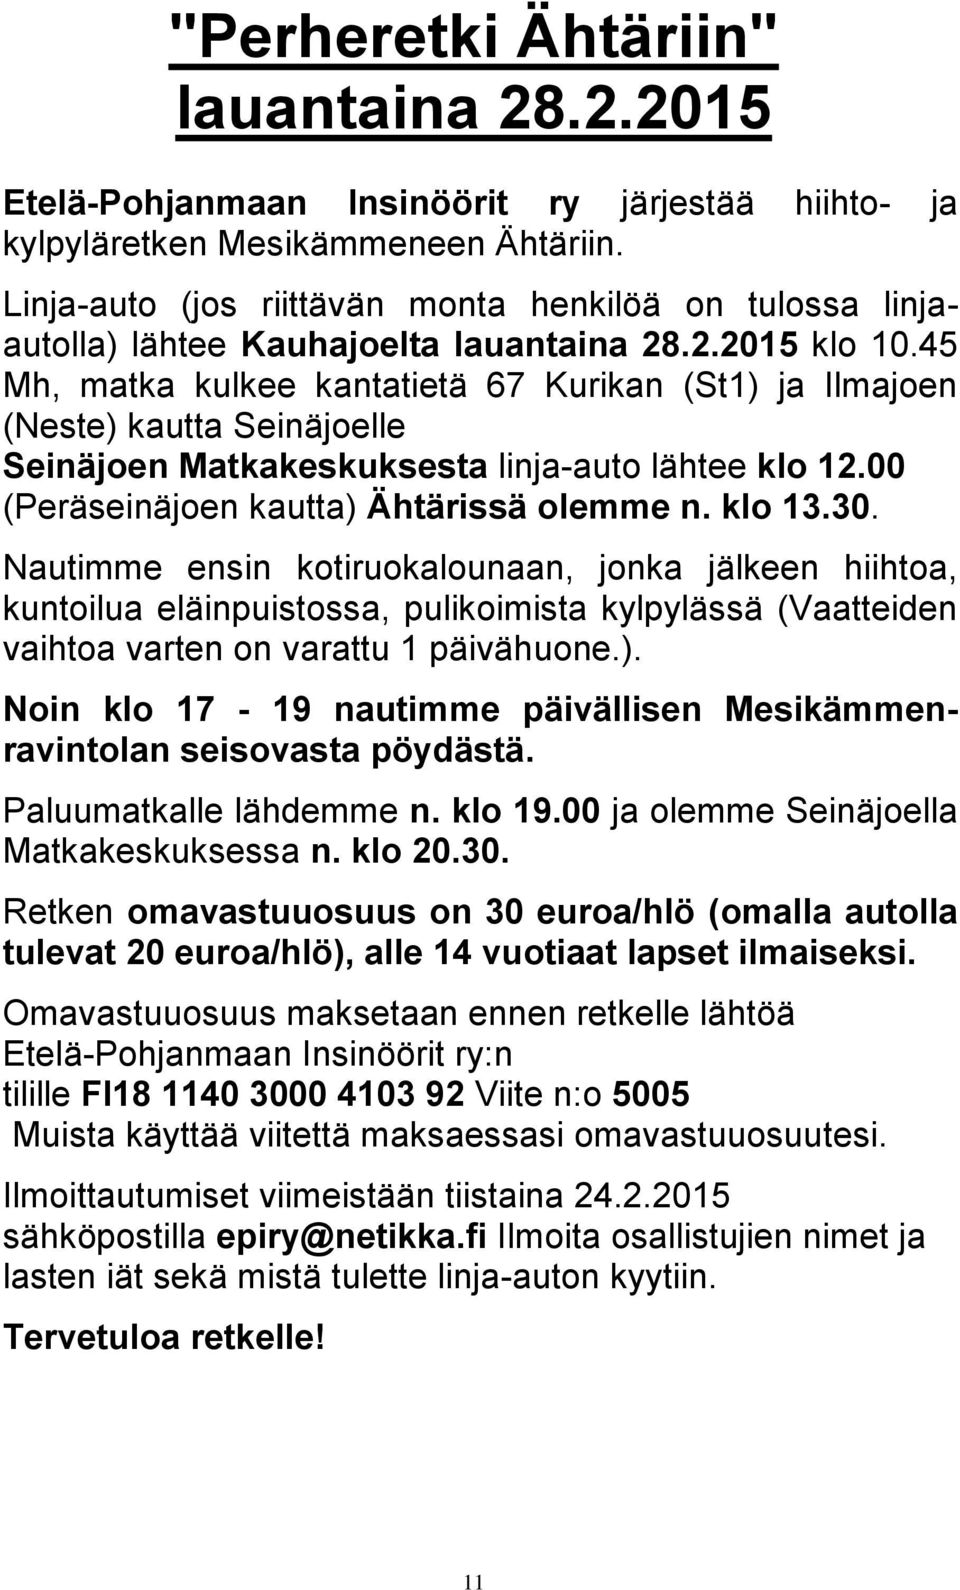 45 Mh, matka kulkee kantatietä 67 Kurikan (St1) ja Ilmajoen (Neste) kautta Seinäjoelle Seinäjoen Matkakeskuksesta linja-auto lähtee klo 12.00 (Peräseinäjoen kautta) Ähtärissä olemme n. klo 13.30.